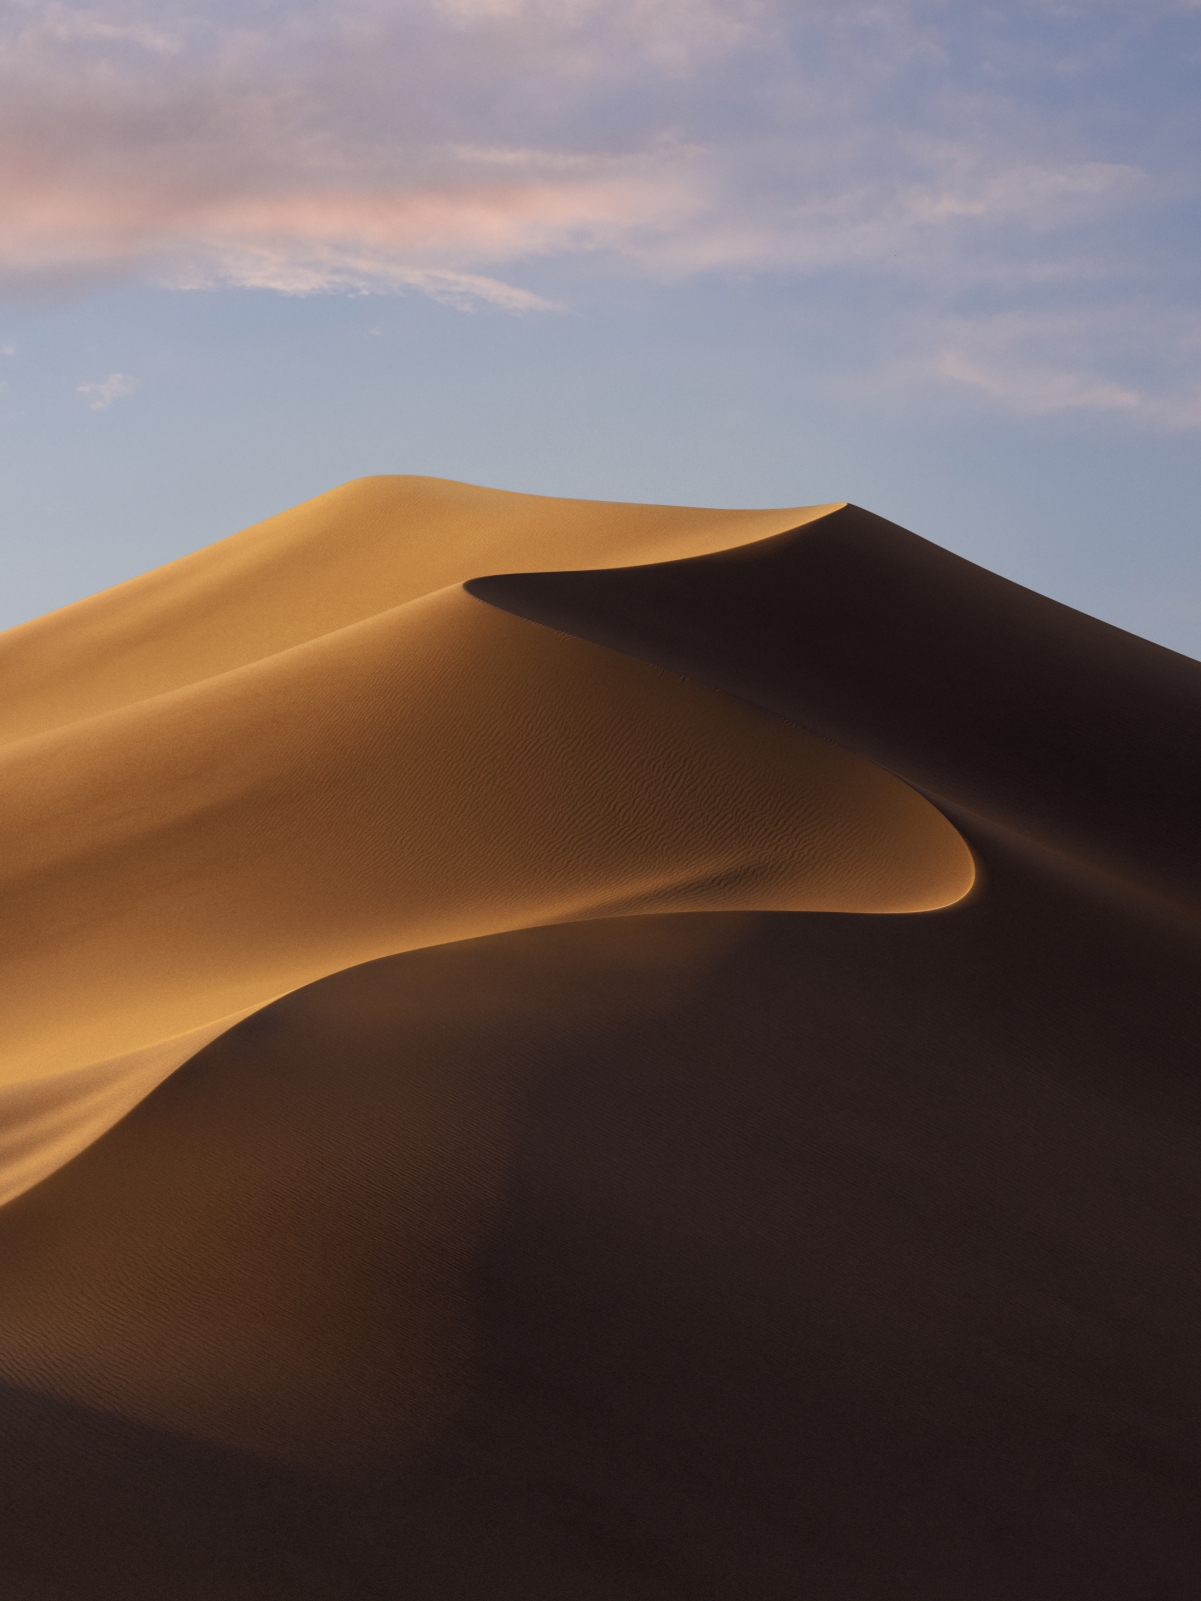 【2160x2880】macOS Mojave iPad壁纸 白天沙漠风景